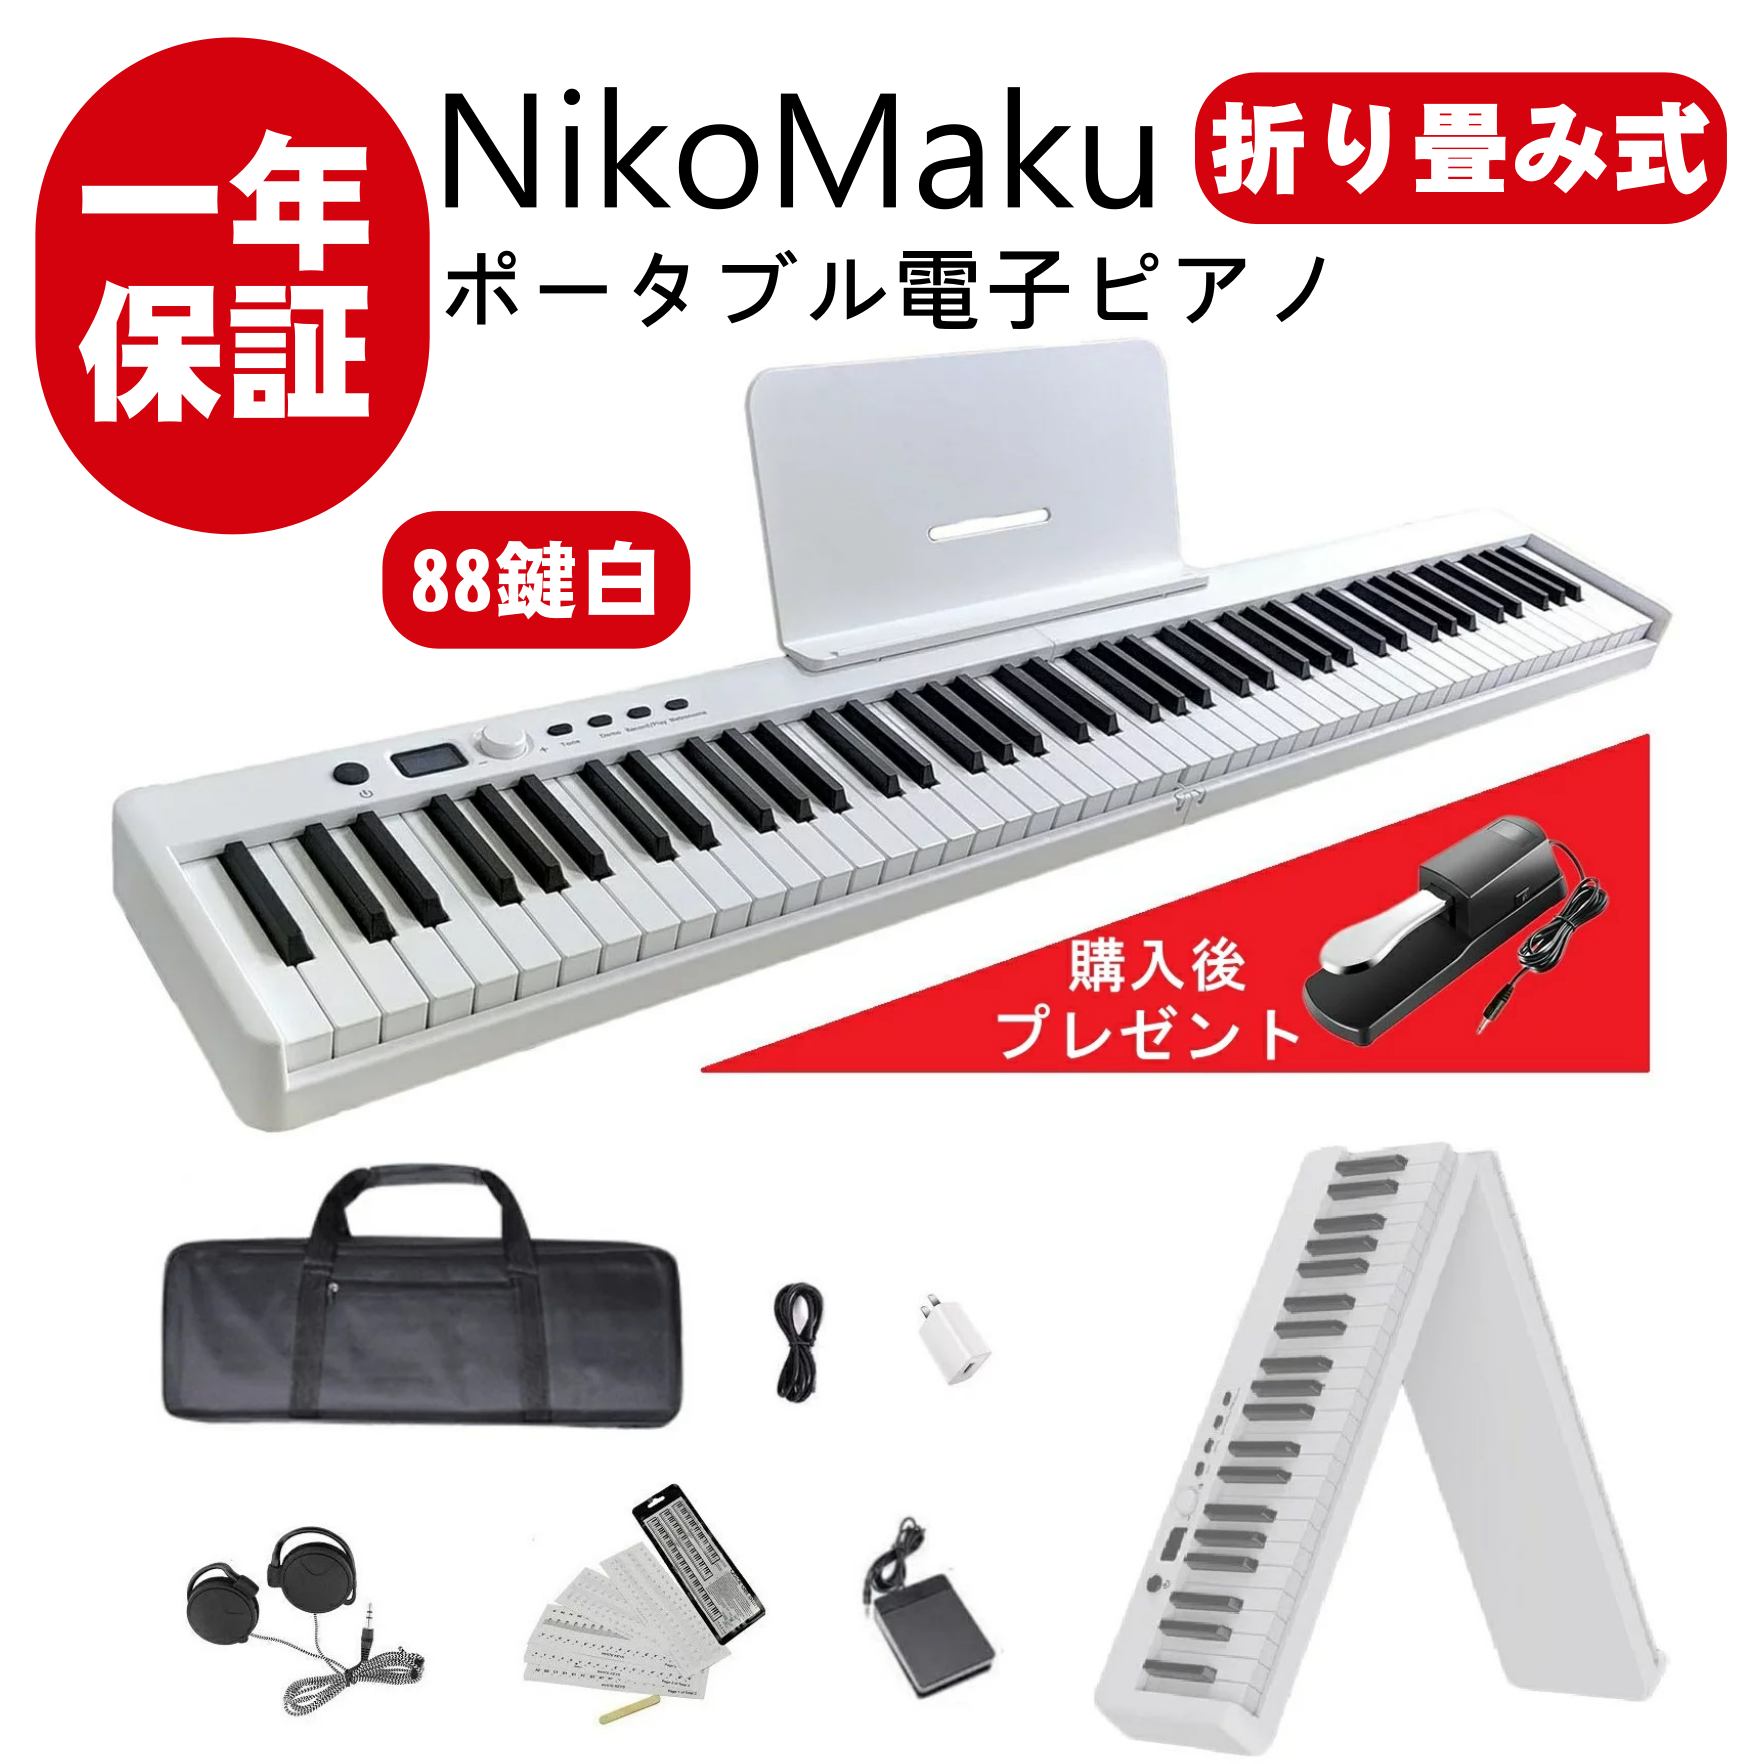 【楽天市場】電子ピアノ 88鍵盤 NikoMaku 折り畳み式電子ピアノ